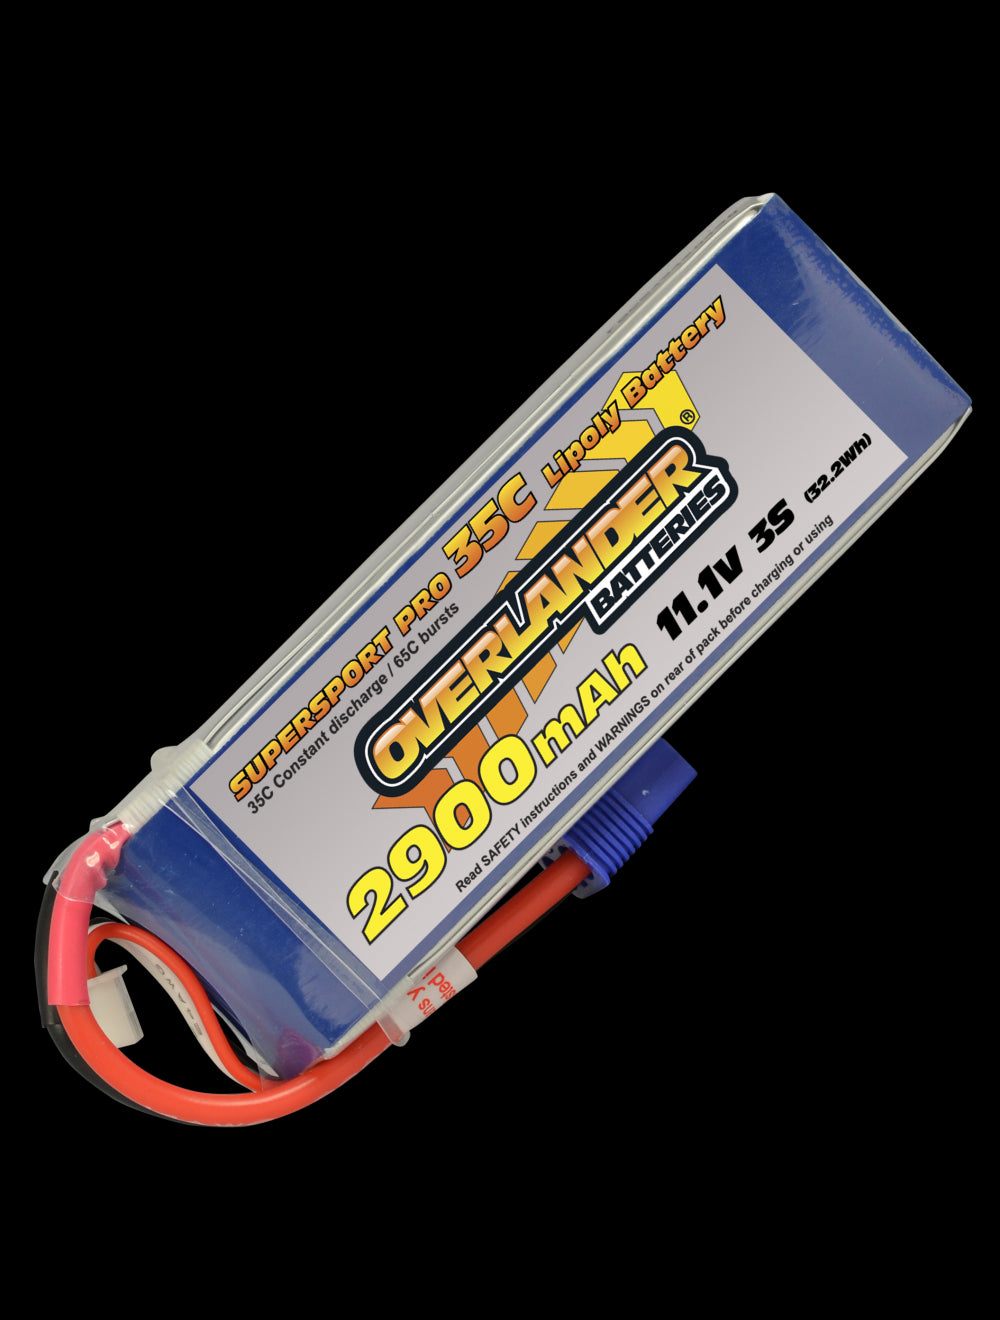 Overlander 2900mAh 11.1V 3S 35C Supersport Pro LiPo Battery - EC3 Connector 2776